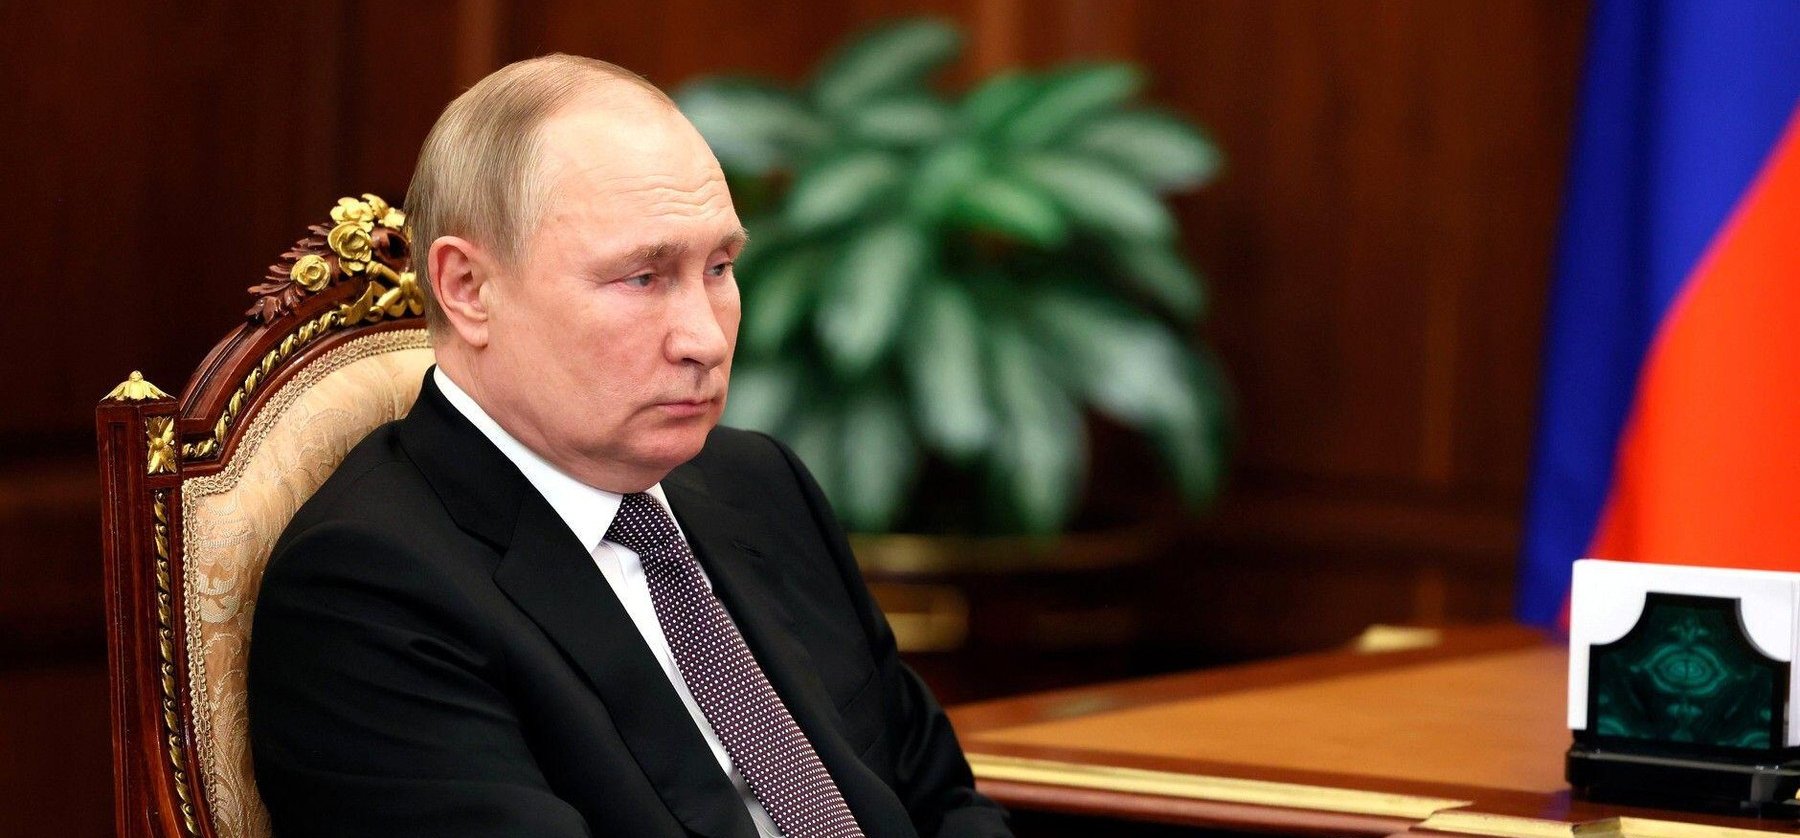 Putyinnak hónapjai vannak hátra – az orosz elnök napjai meg vannak számlálva egy volt brit hírszerző szerint